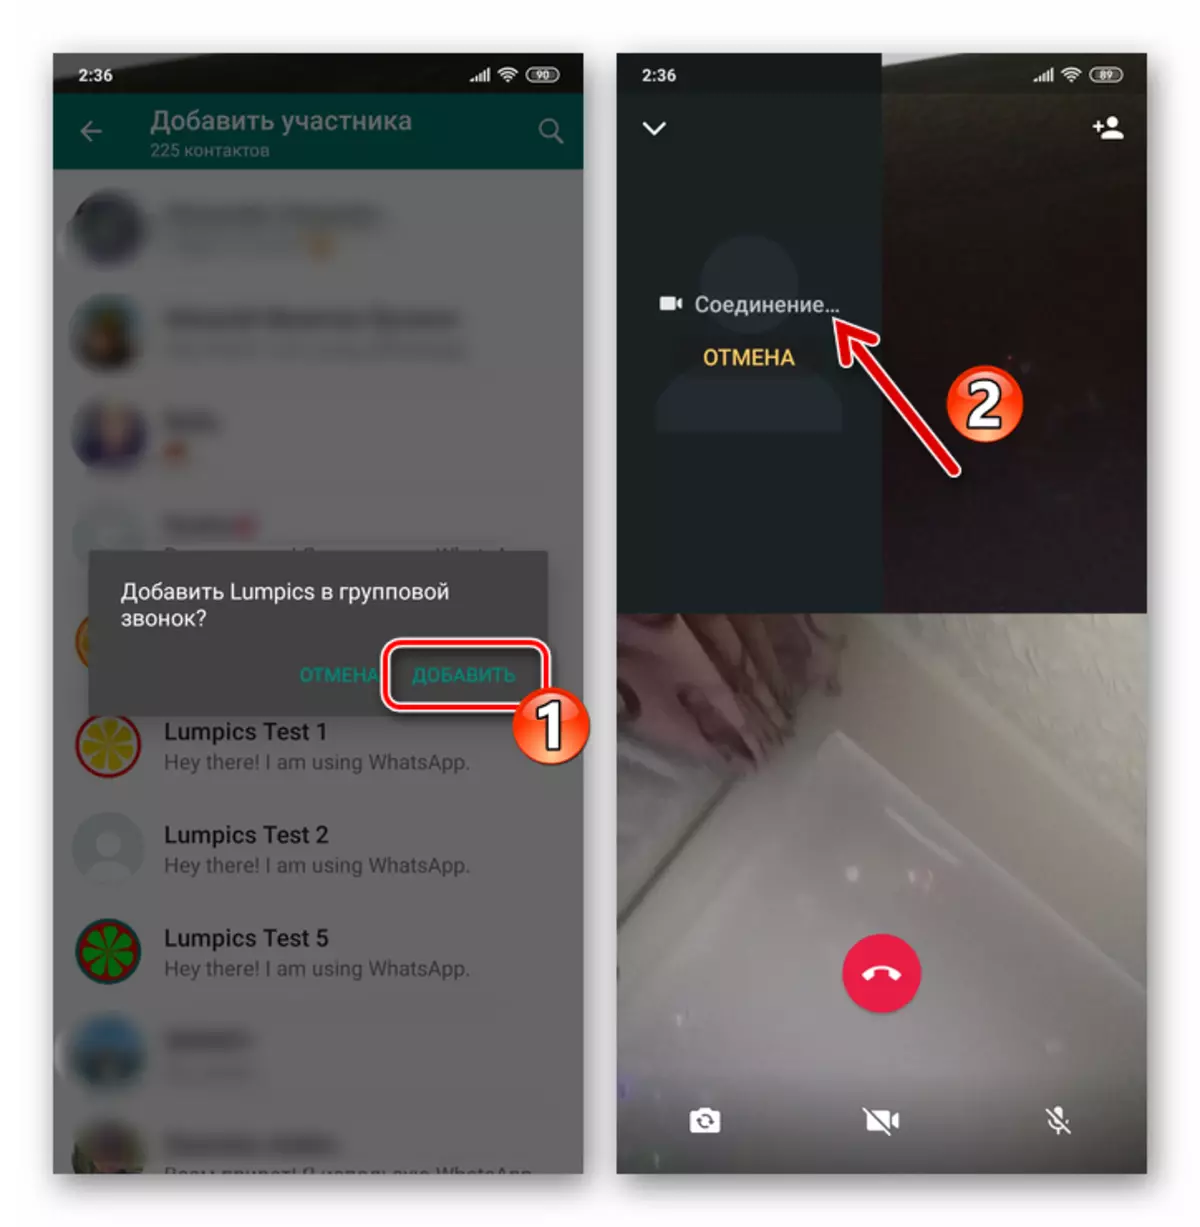 WhatsApp voor Android-verbinding met een derde in het proces van videogesprek door de Messenger